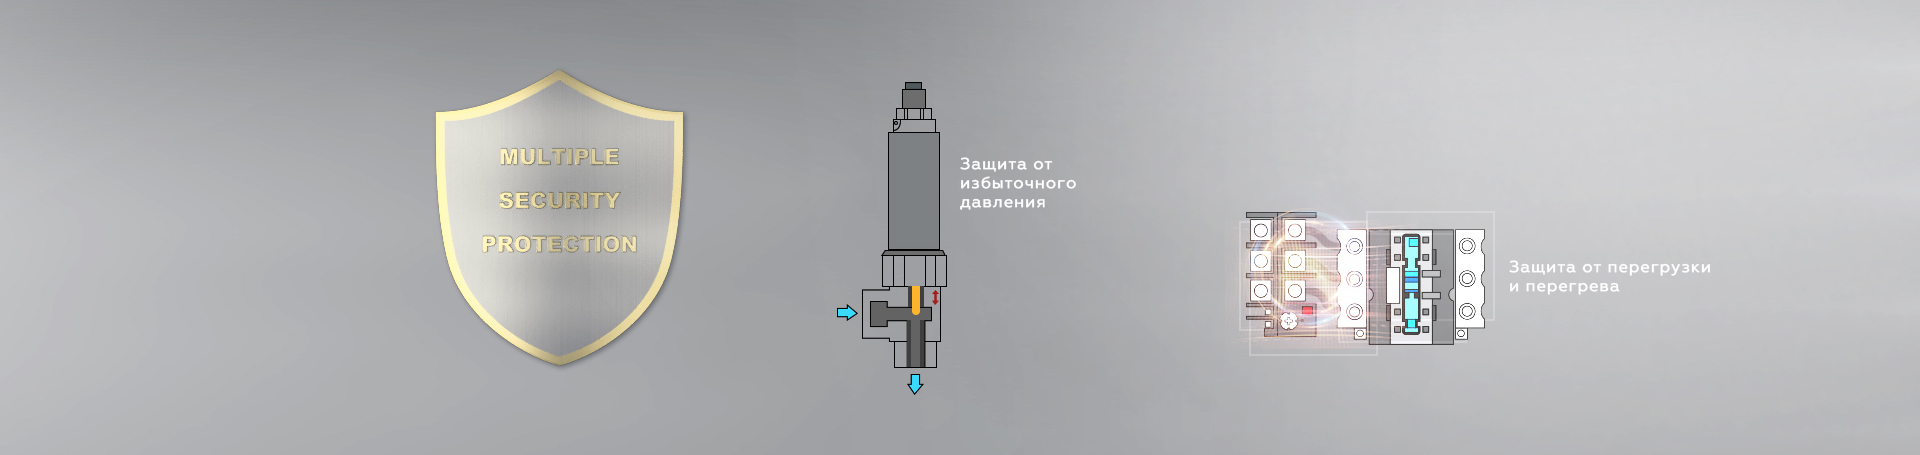 diandongfenti105 - Гидроабразивная установка для резки взрывоопасных заготовок